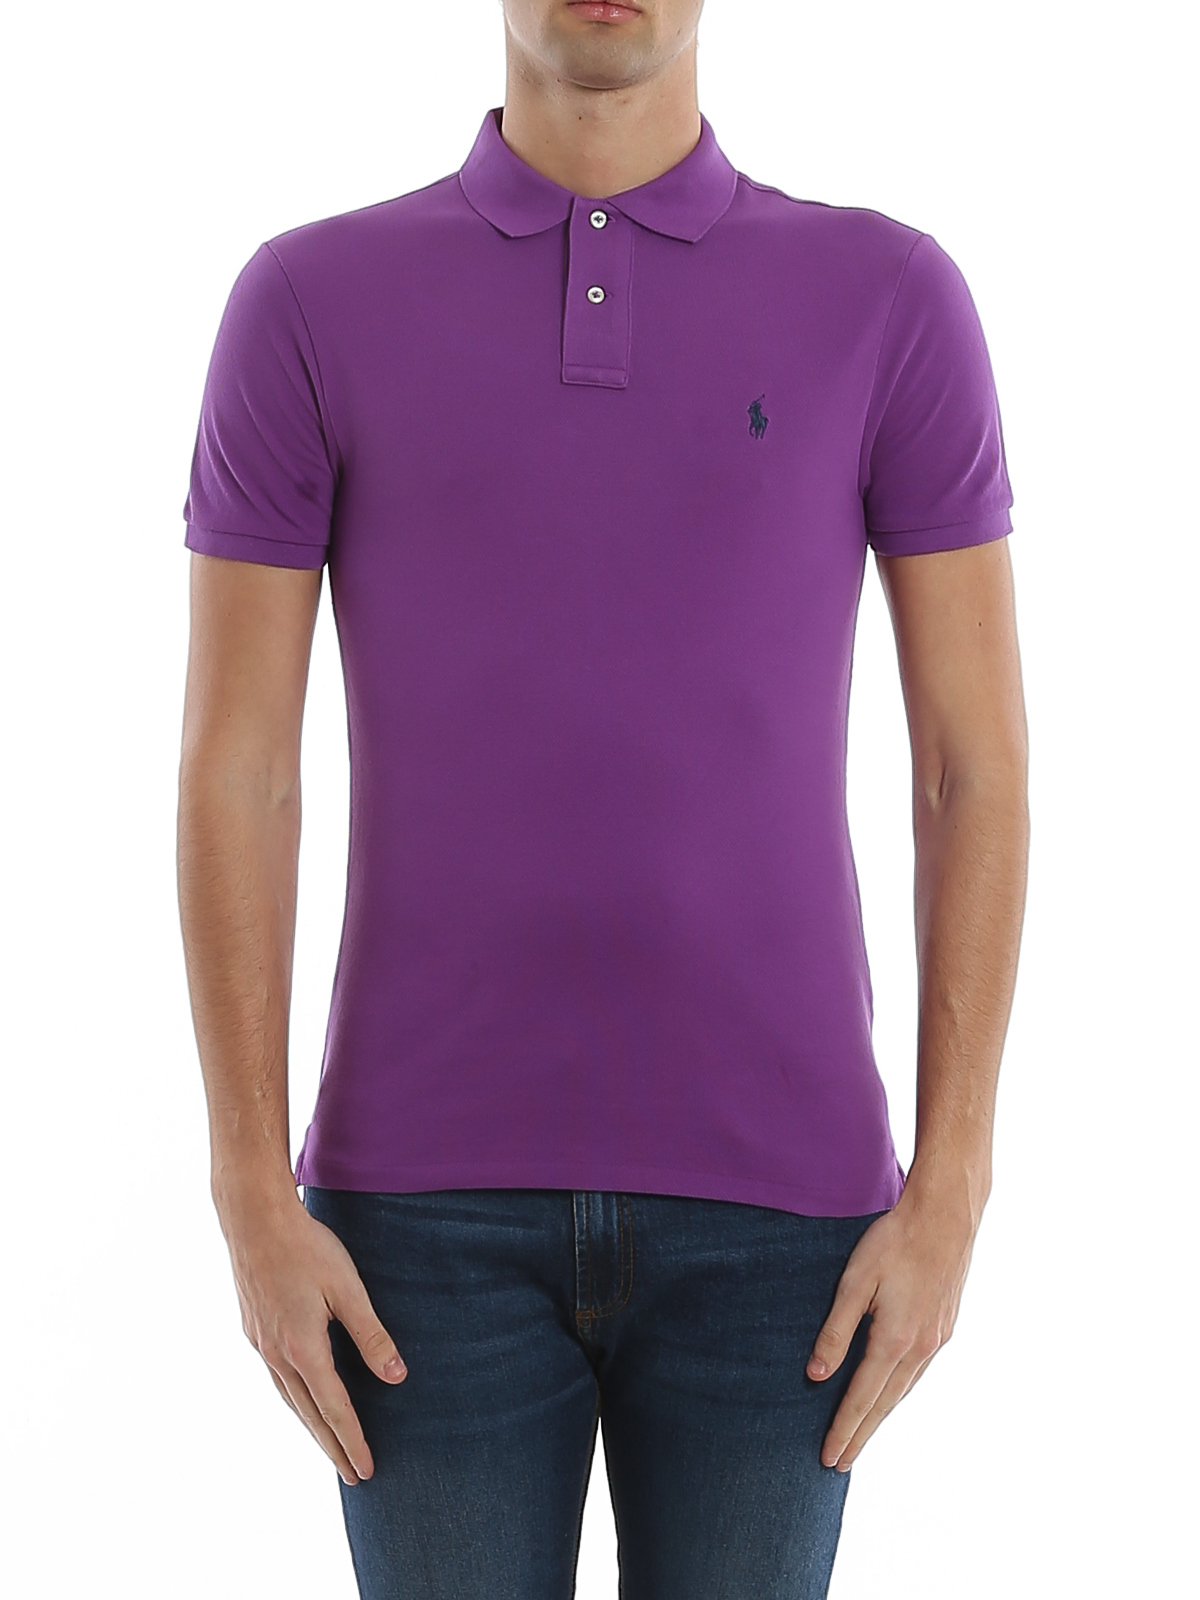 Polo shirts Polo Ralph Lauren - Logo embroidery purple pique polo shirt -  710795080030